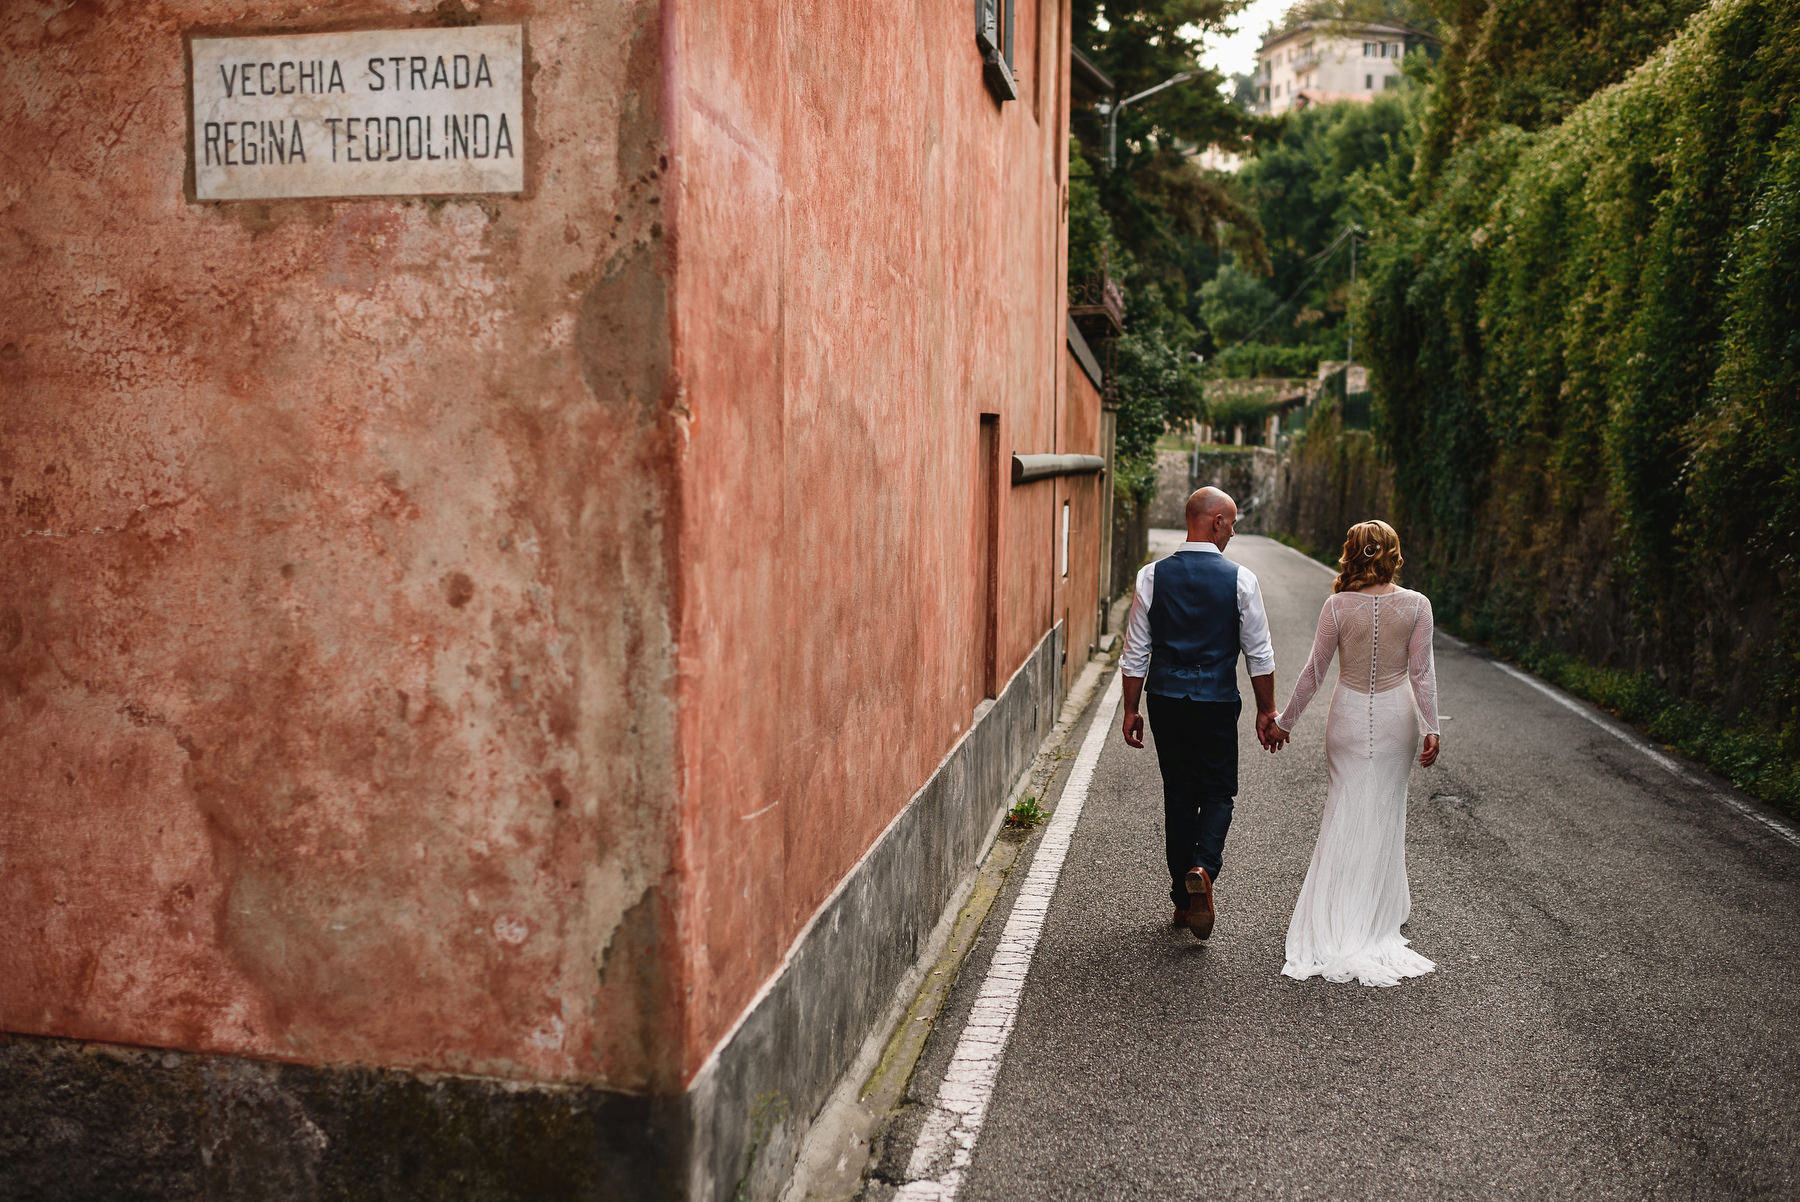 Italian Destination Wedding - Villa Regina Teodolinda Wedding Photographer